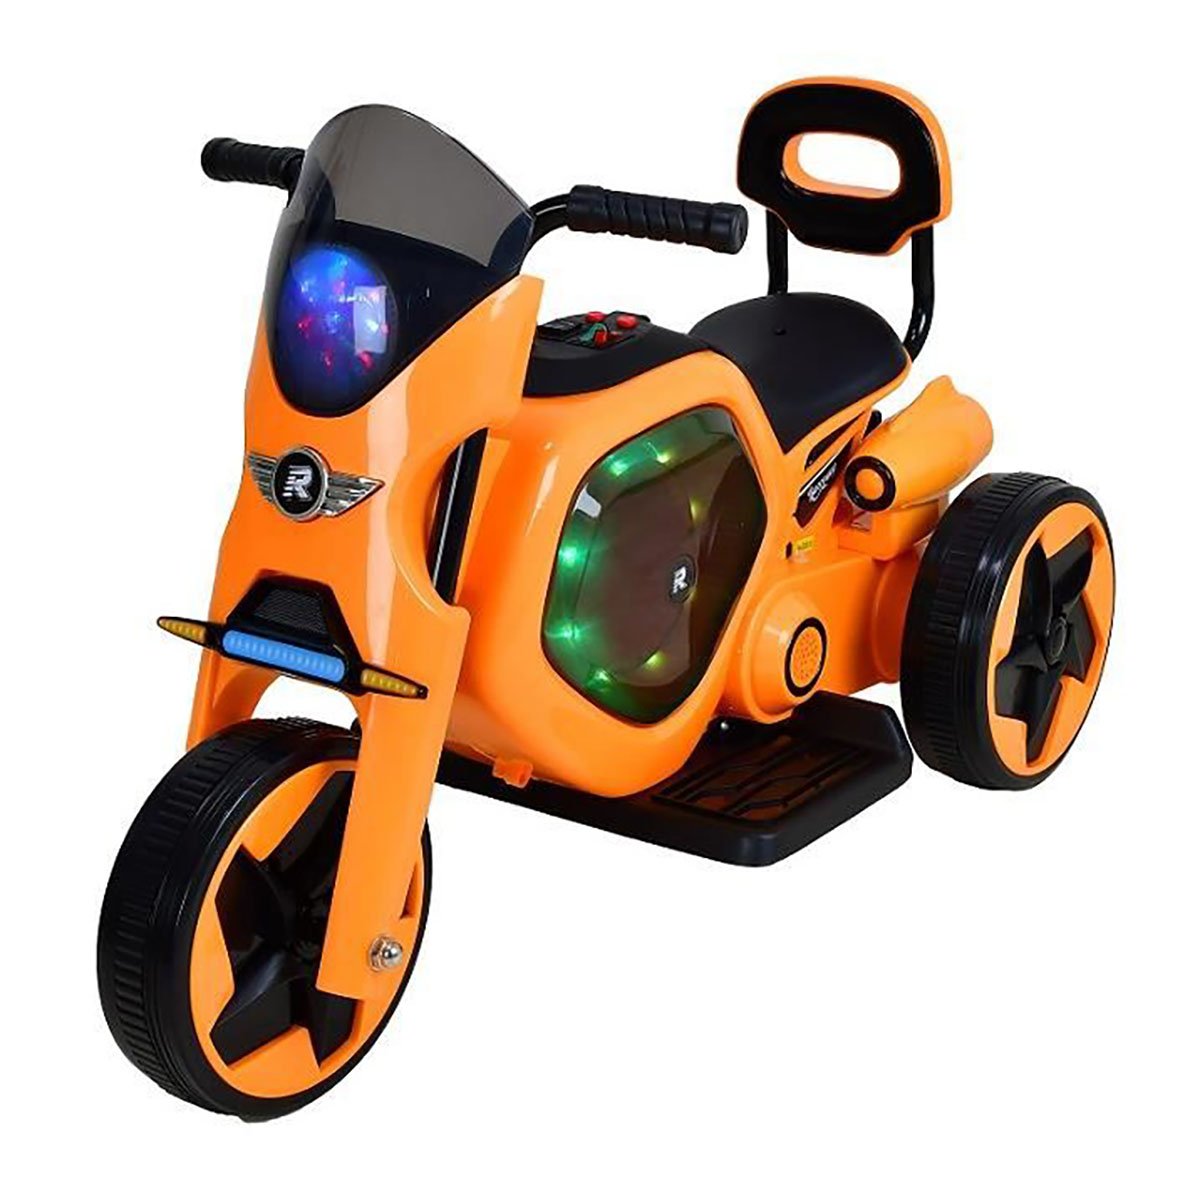 Tricicleta electrica DHS, portocaliu DHS